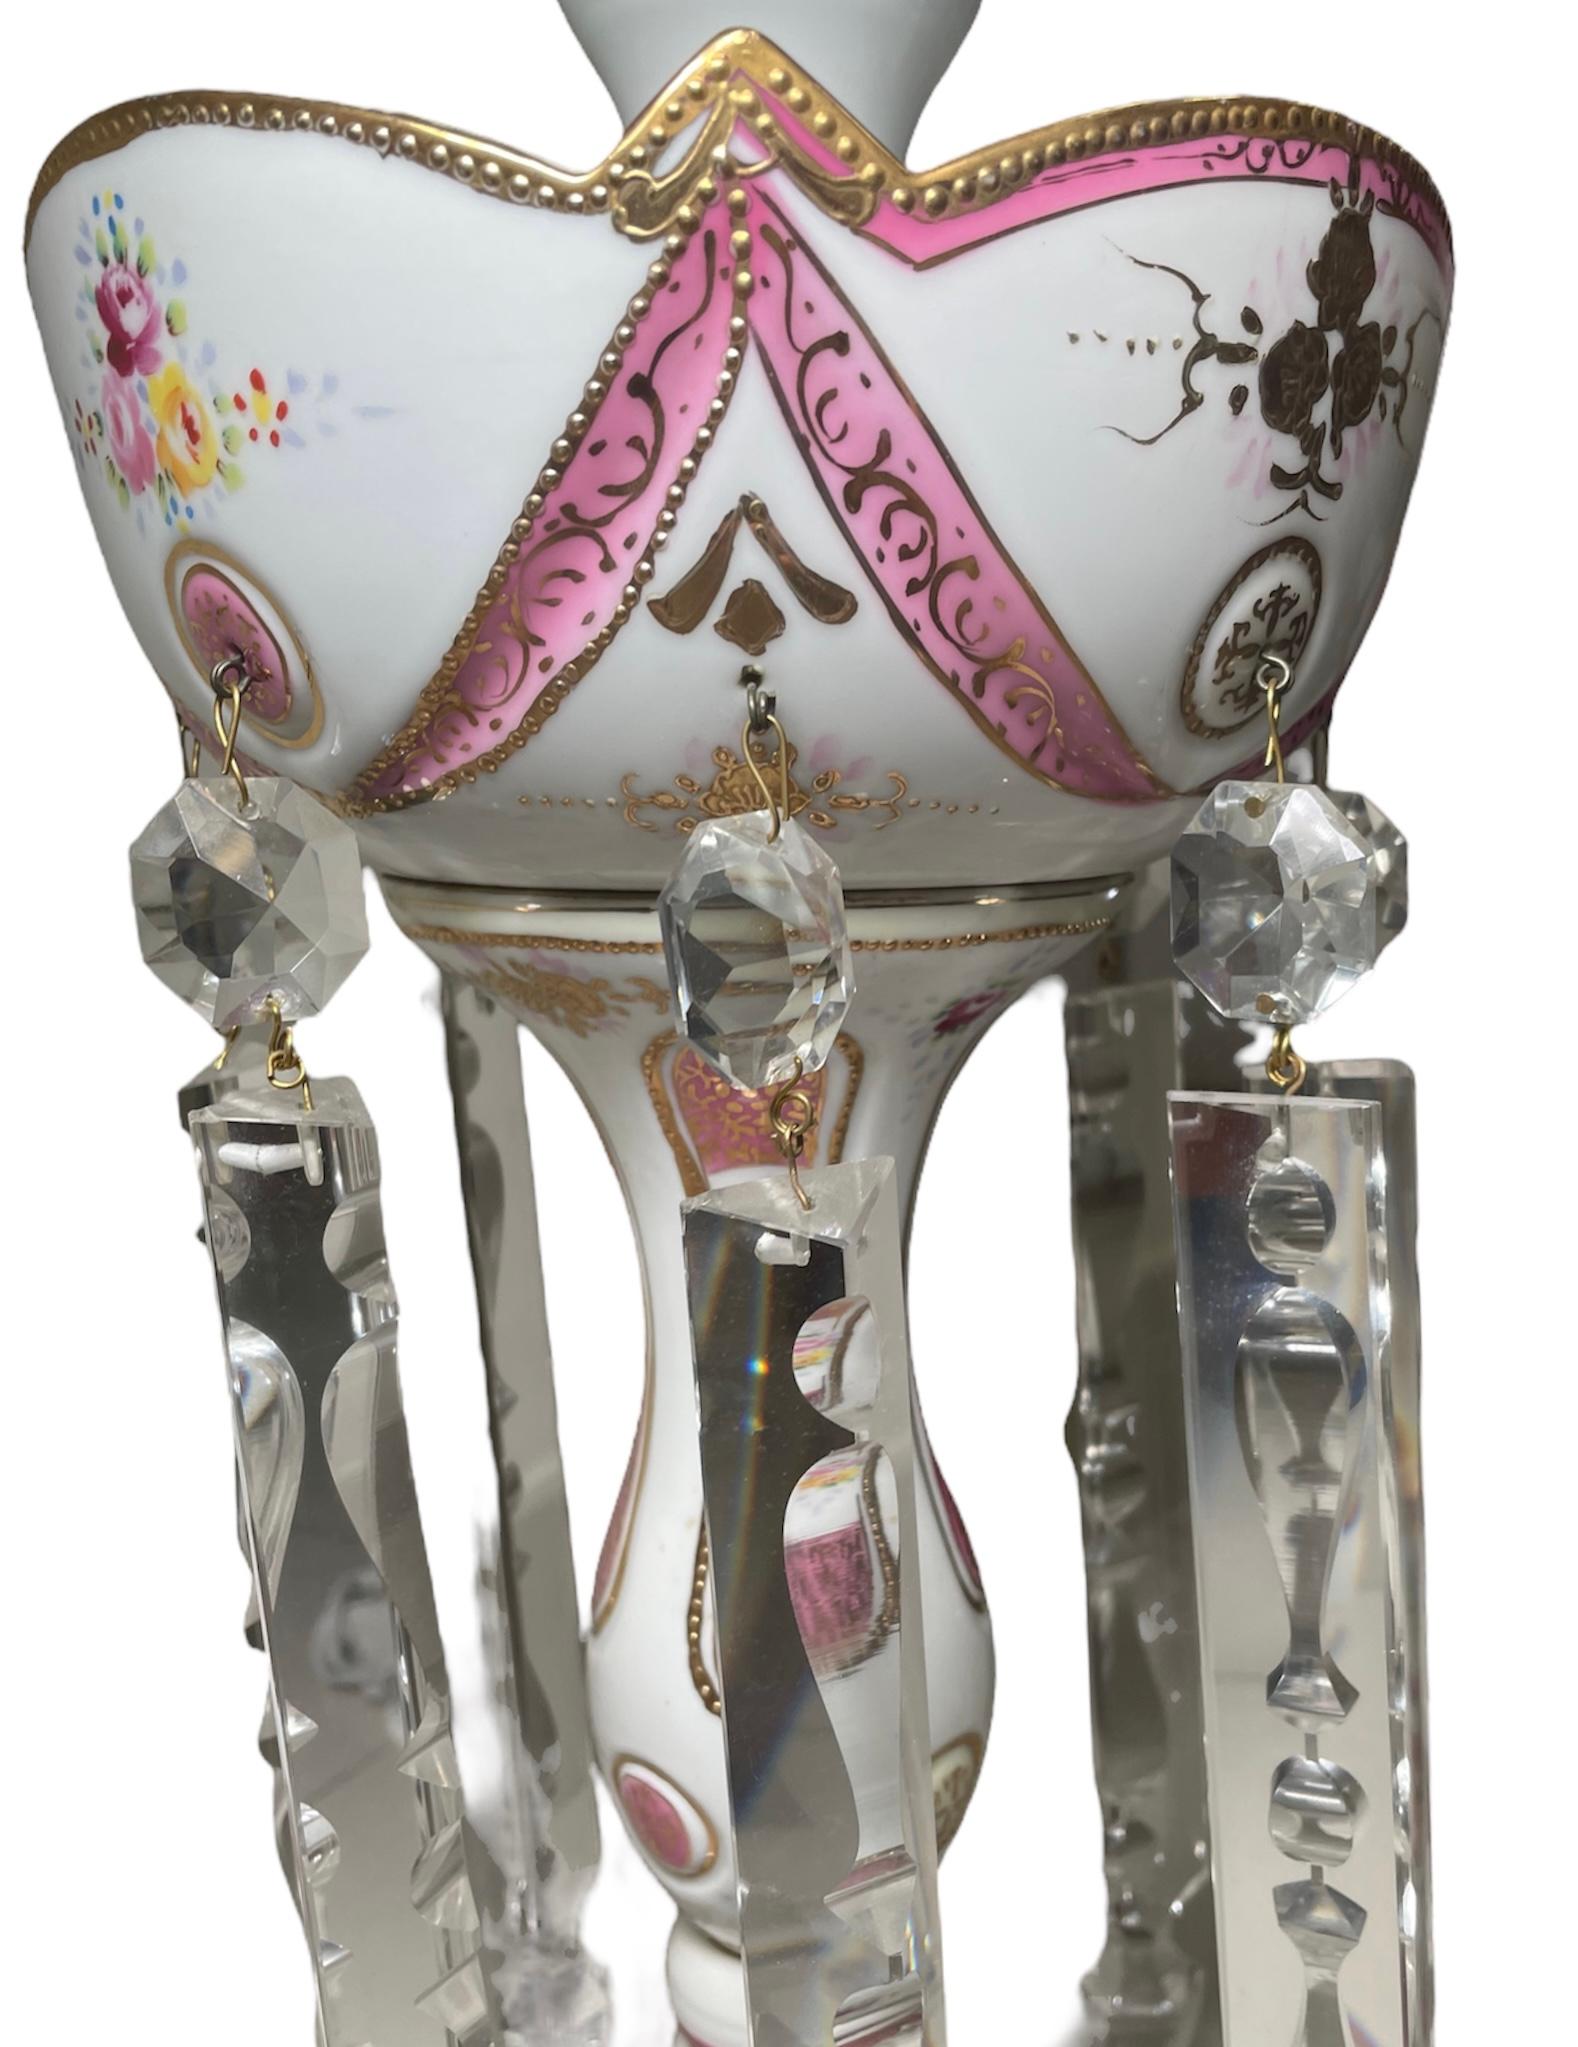 Dies ist eine Porzellan Mantle Luster Lampe. Es zeigt eine handgemalte Lampe mit weißem Hintergrund, die durch rosa Bänder, Girlanden und Kreise mit vergoldeten Details verziert ist. Ein Rosenstrauß schmückt auch das Dekor der Lampe. Der obere Rand